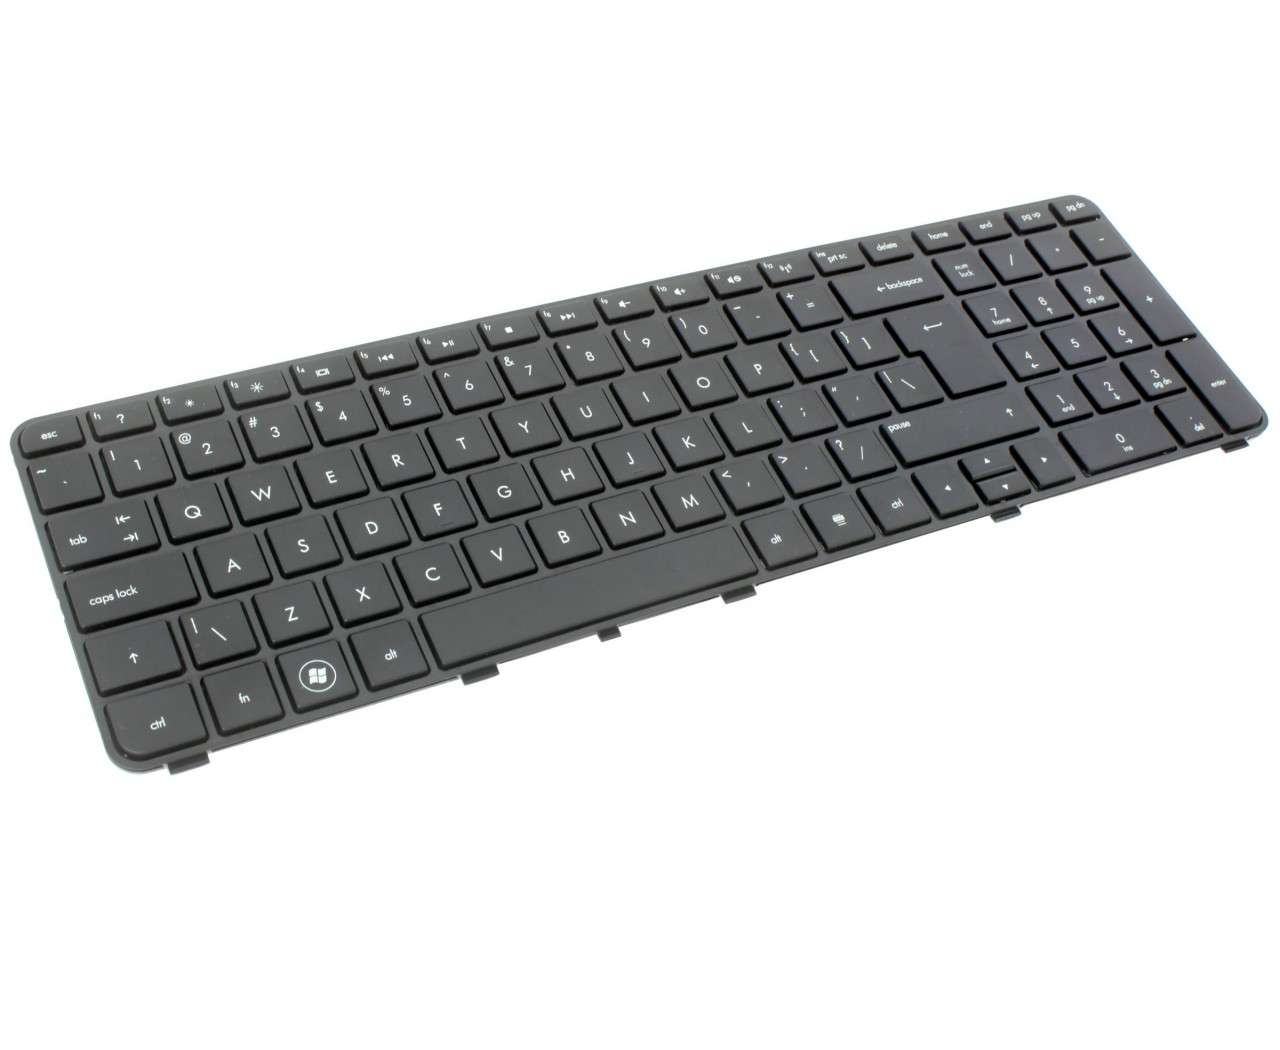 Tastatura HP 608557 B31